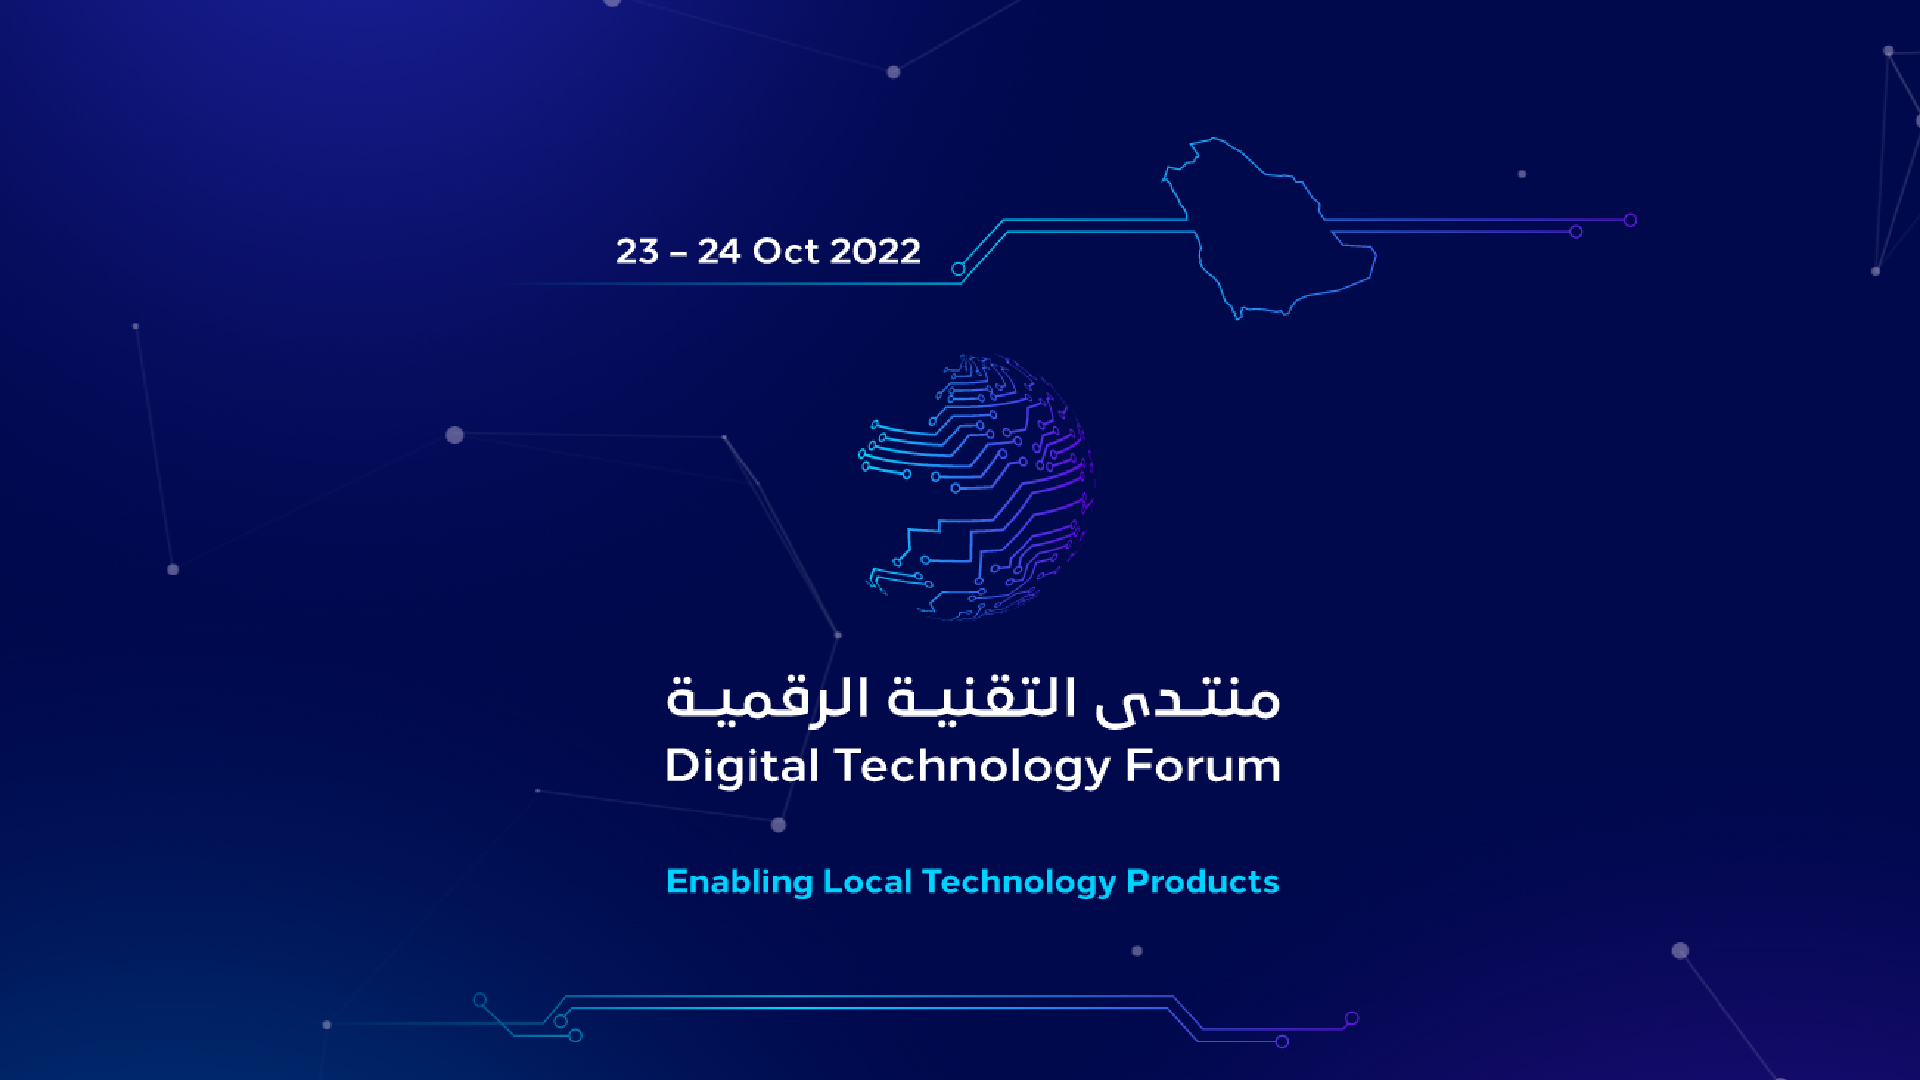 LinQ2’s Participation at CITC Digital Technology Forum 2022